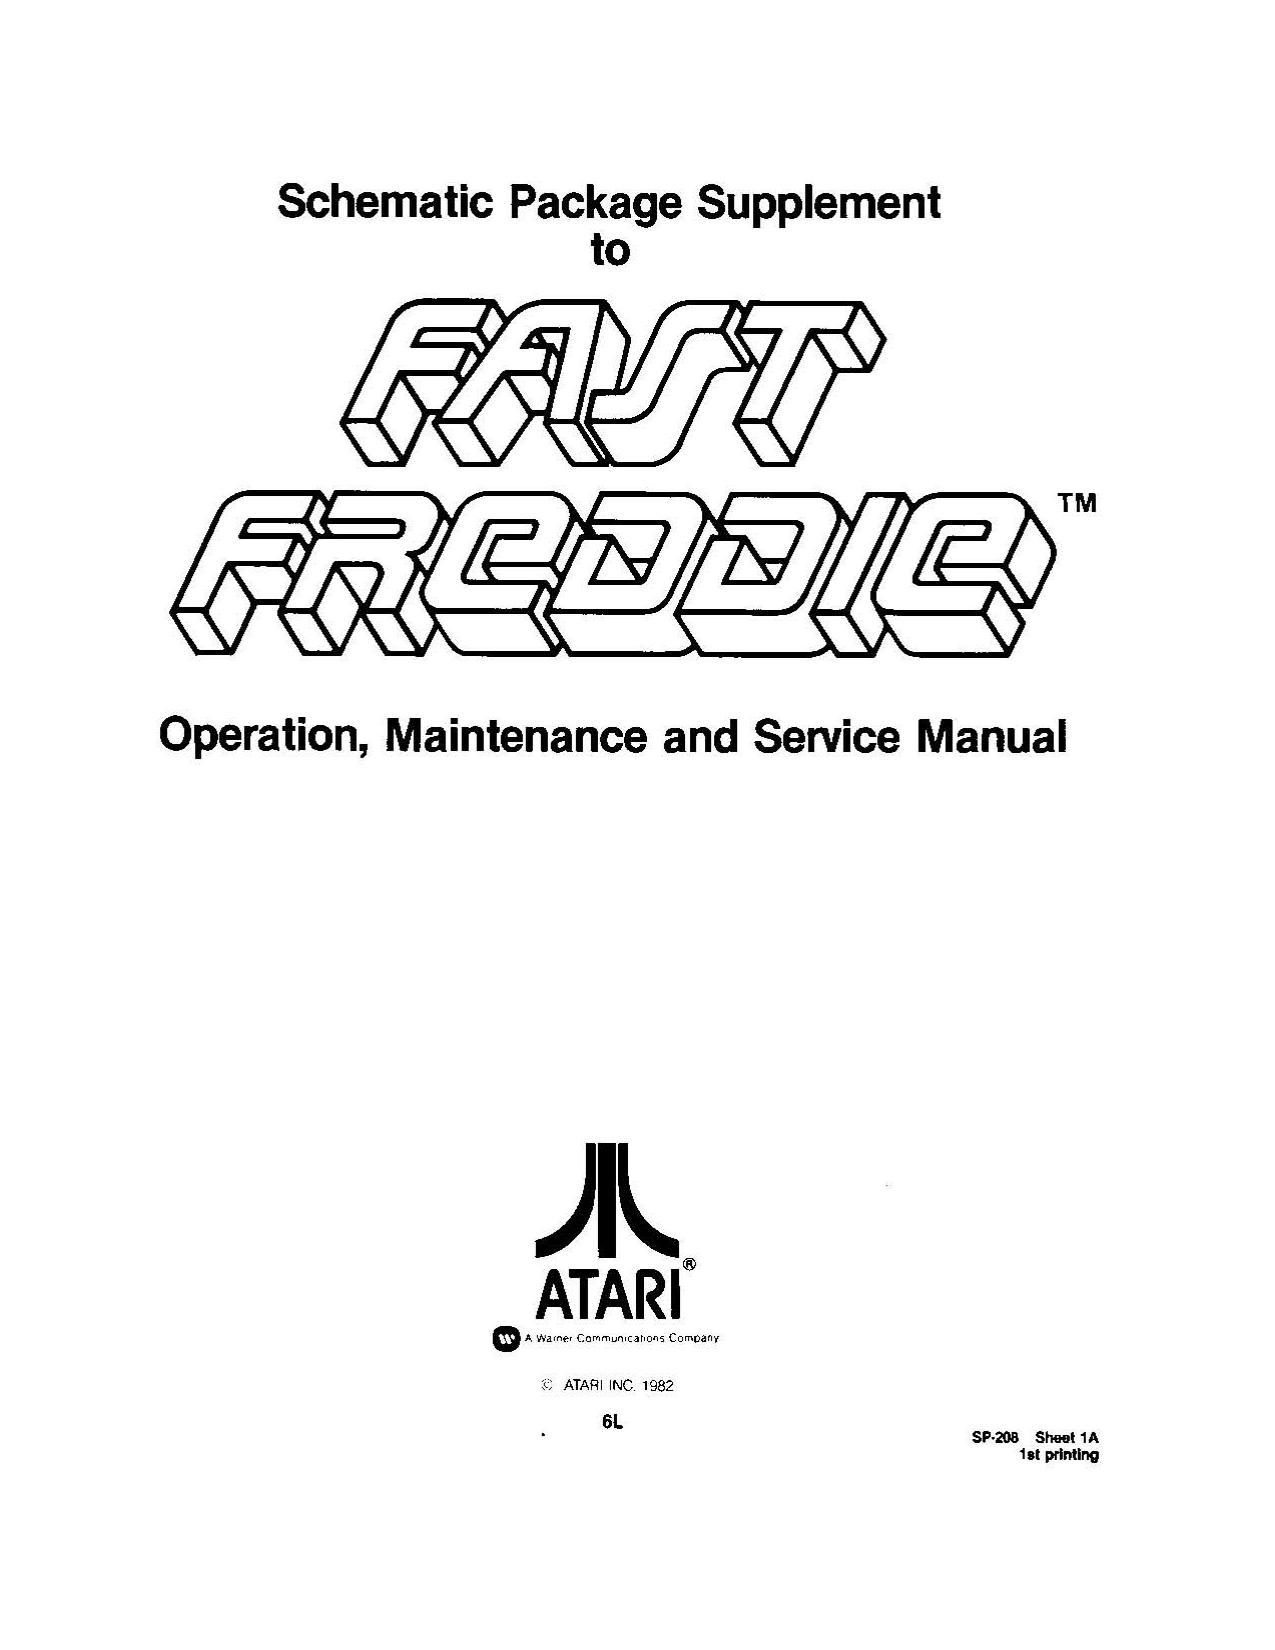 Fast Freddie (SP-208 1st Printing) (Schematic Package) (U)